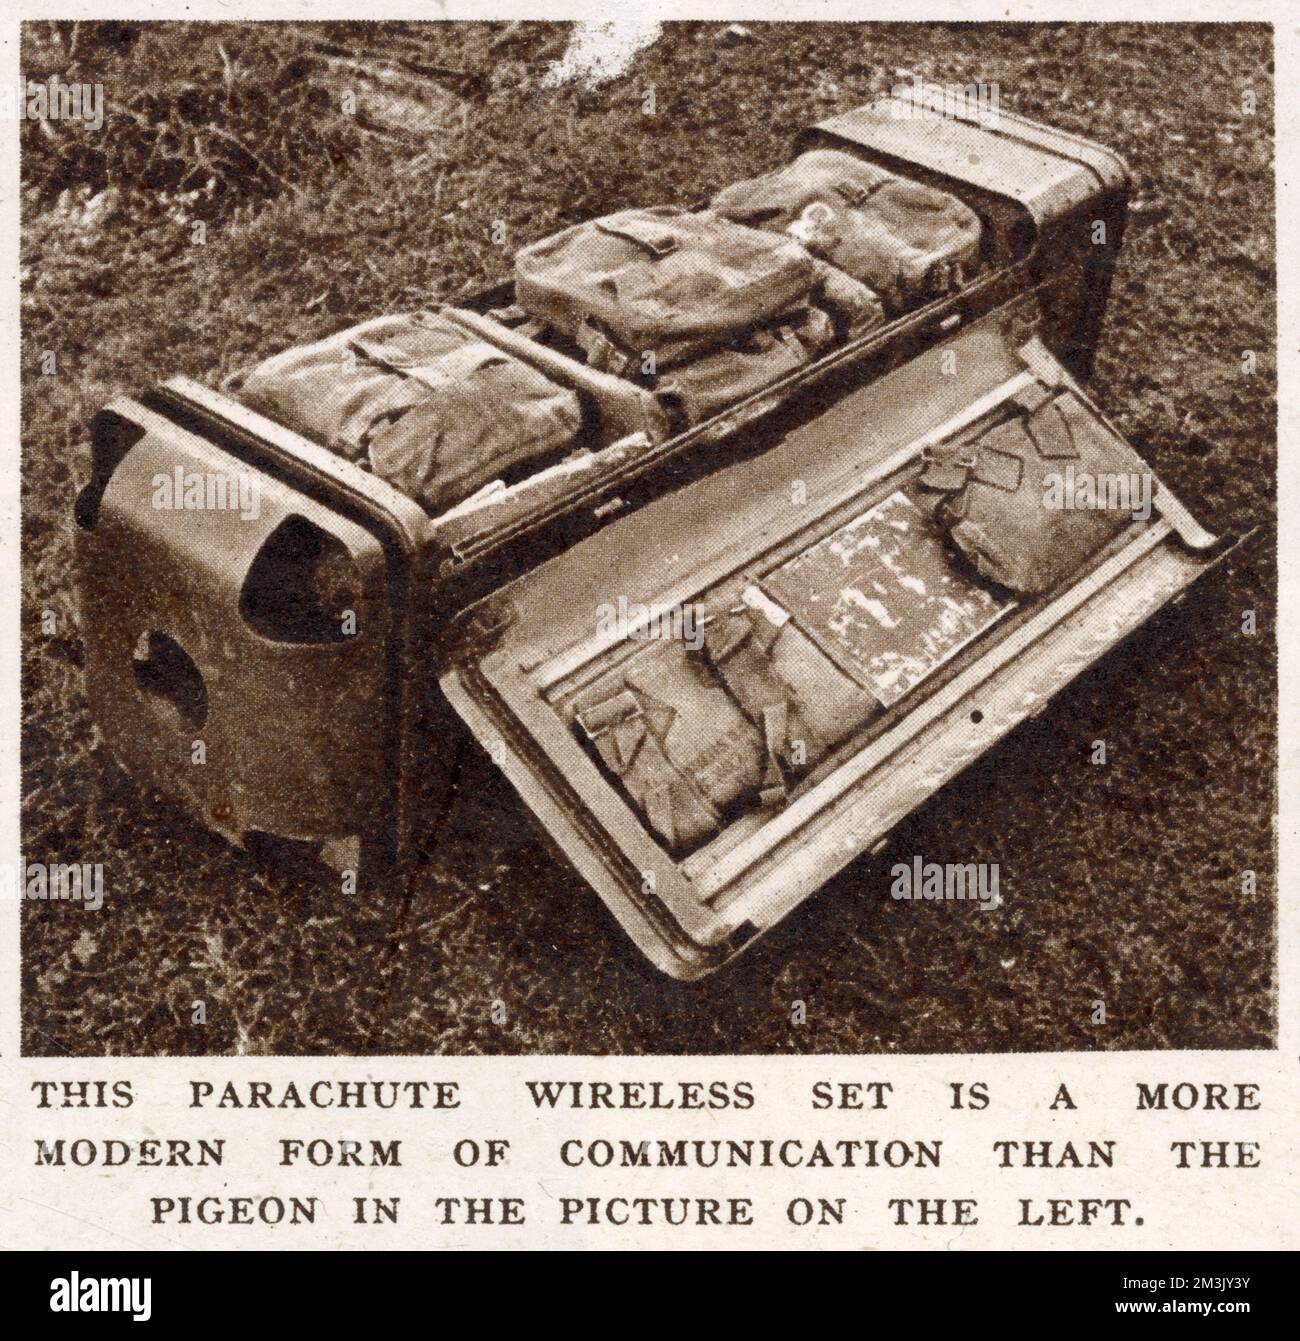 Un apparecchio radio di tipo numero 56, confezionato nel suo contenitore per paracadute, come utilizzato dalle forze aeree britanniche, 1944. Attrezzature come questa sono state utilizzate nell'operazione 'Market Garden', dalla British First Airborne Division, ad Arnhem in Olanda. Foto Stock